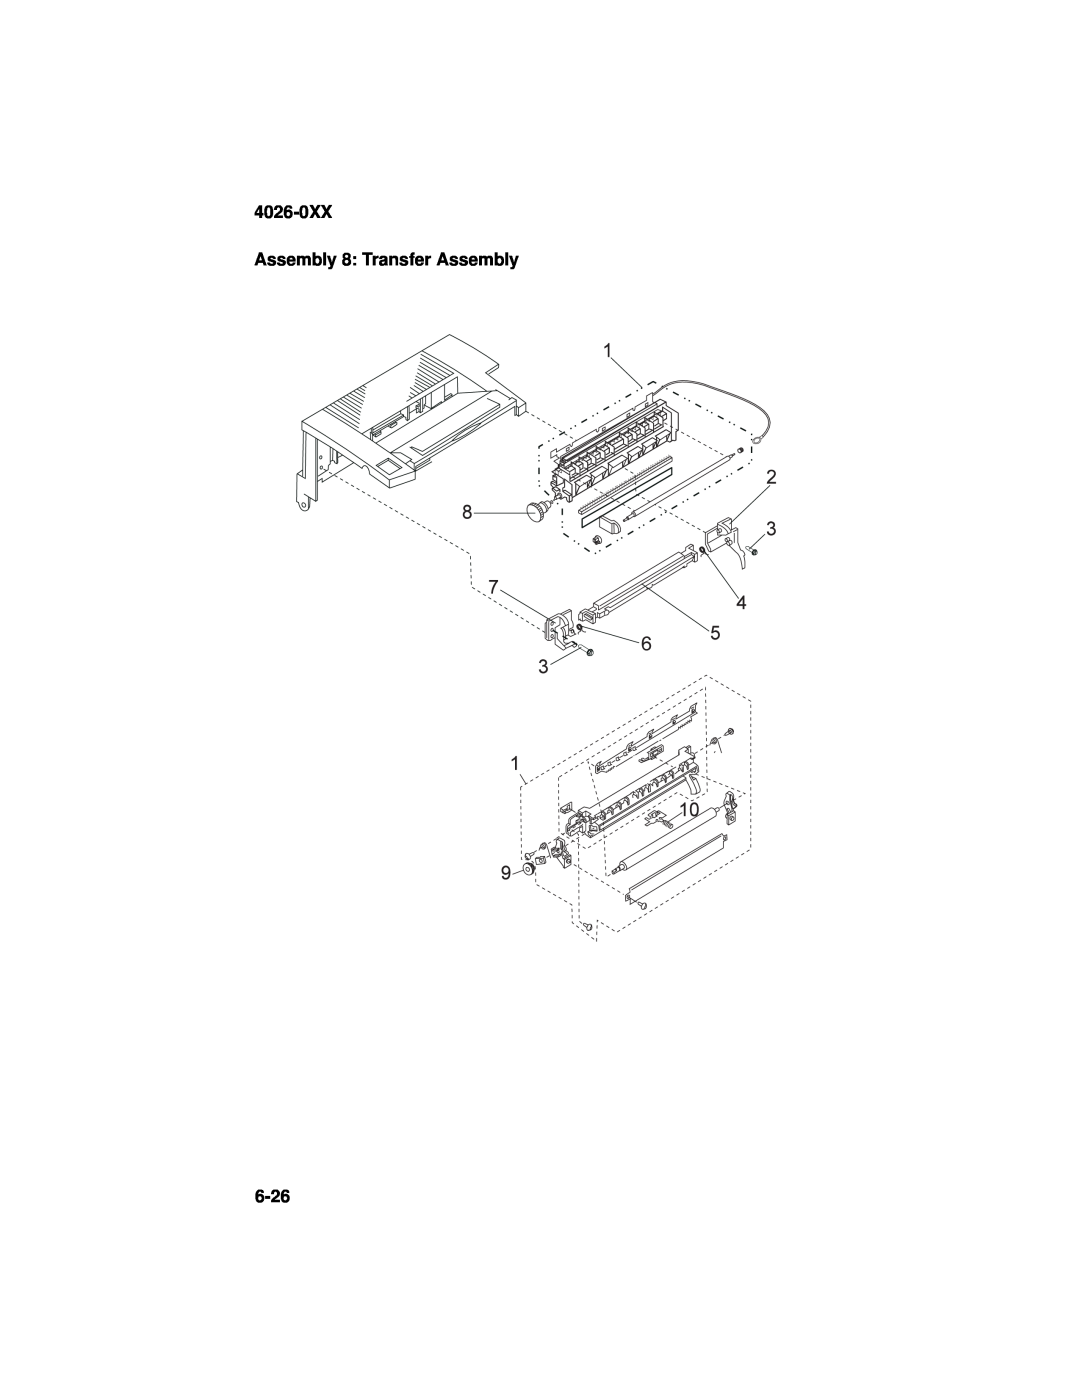 Lexmark manual 4026-0XX Assembly 8: Transfer Assembly, 6-26 